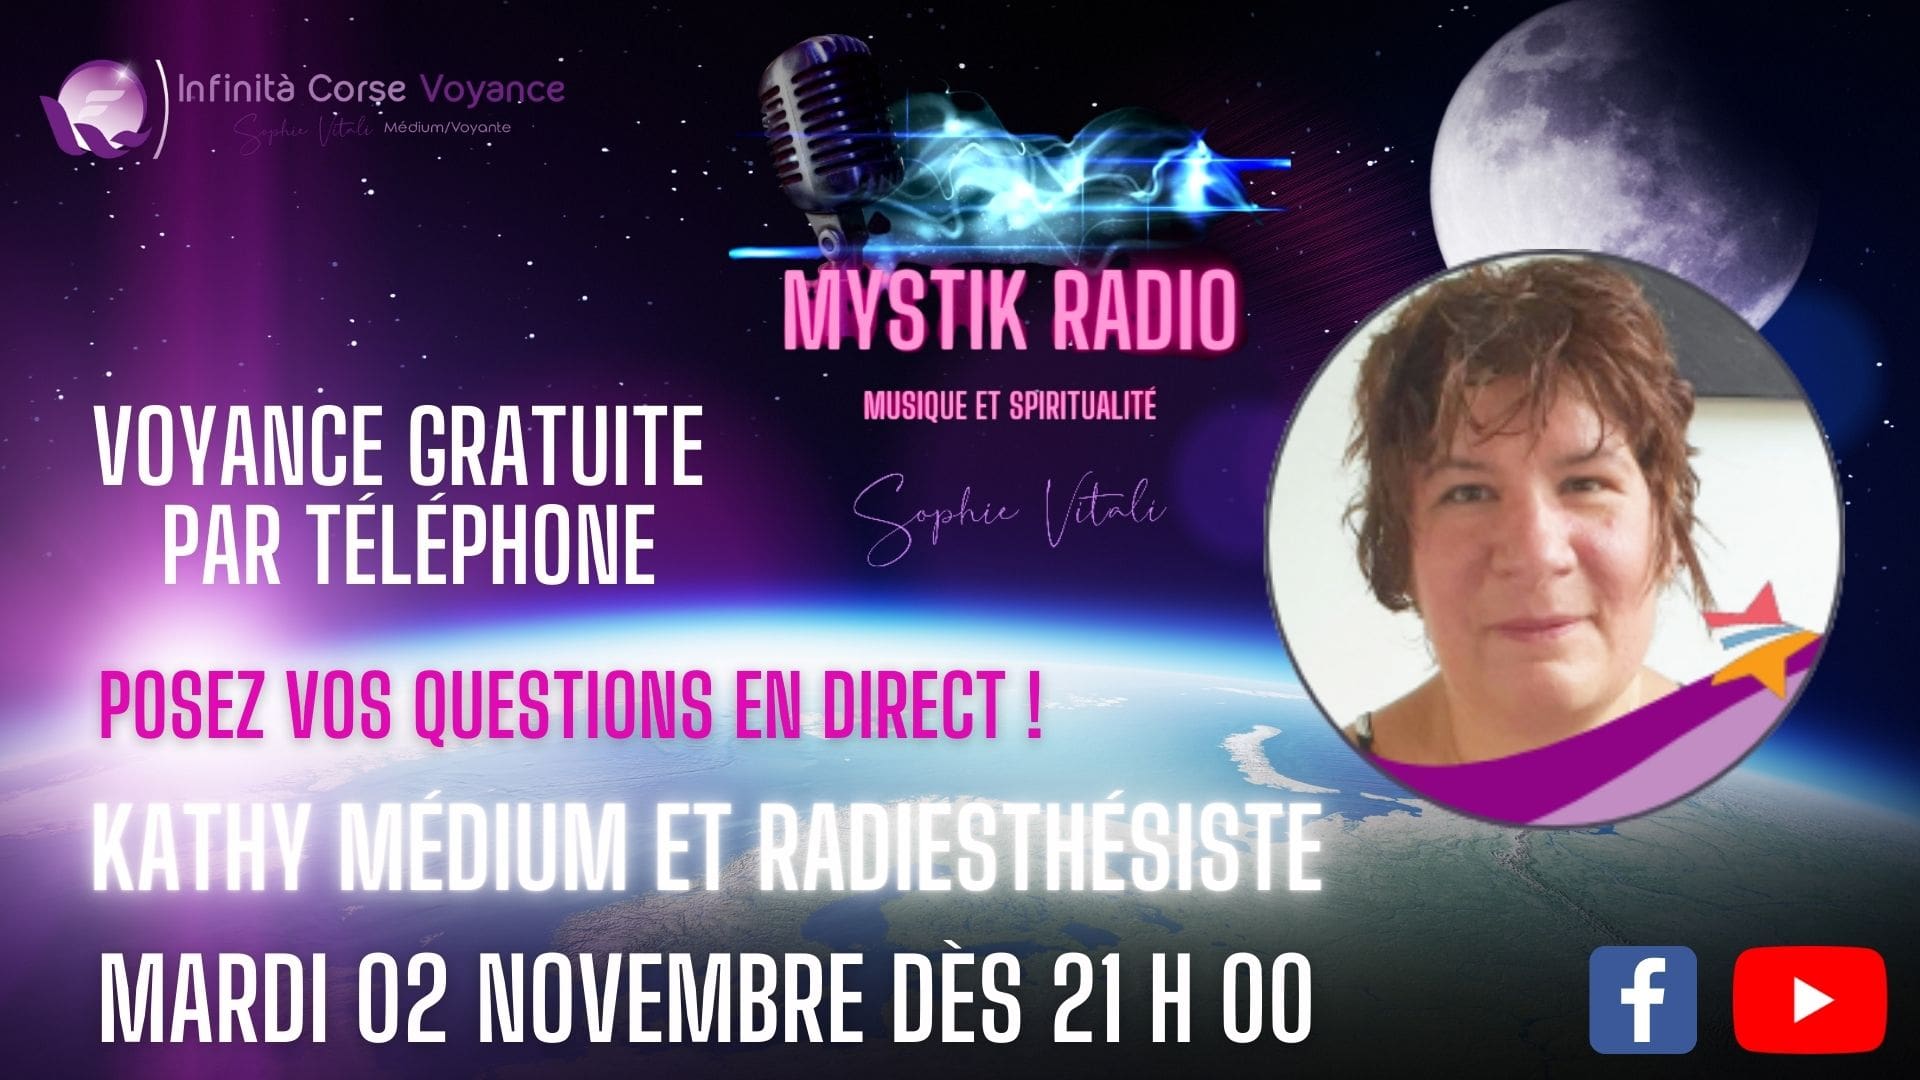 Kathy médium répond à votre question le mardi 12 octobre 2021 dès 21 h 00 sur Mystik Radio ! Sophie Vitali et ses meilleurs voyants